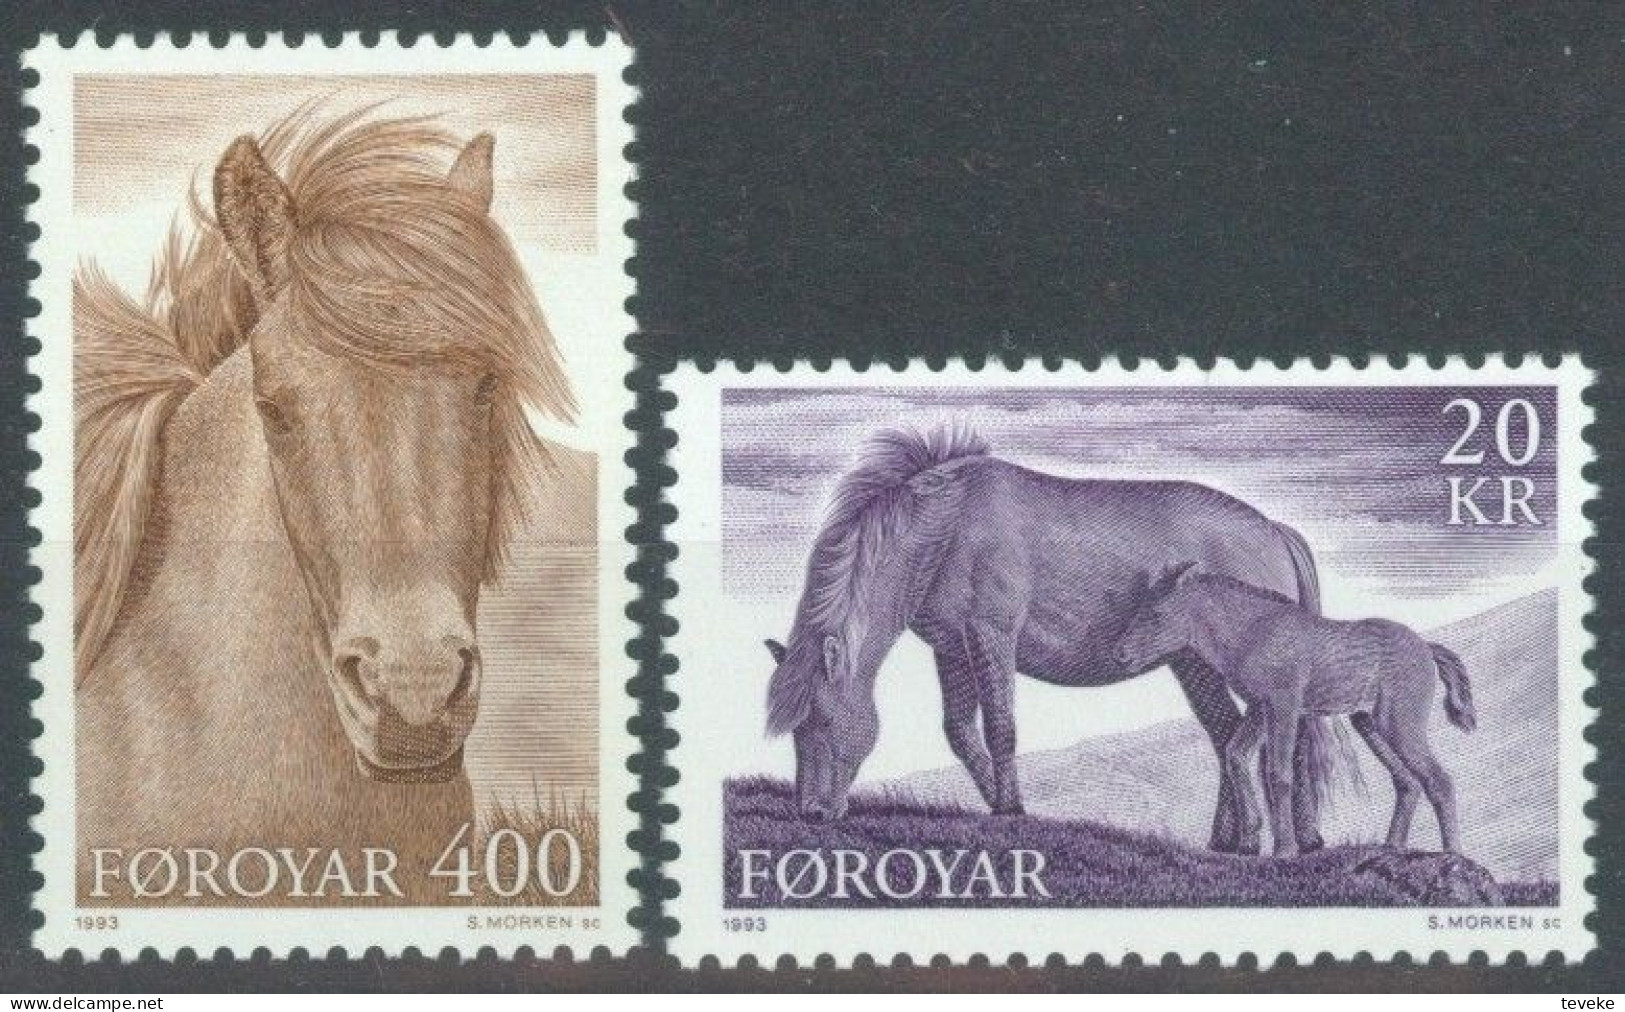 FAEROËR 1993 - MiNr. 250/251 - **/MNH - Fauna - Horses - Faeroër